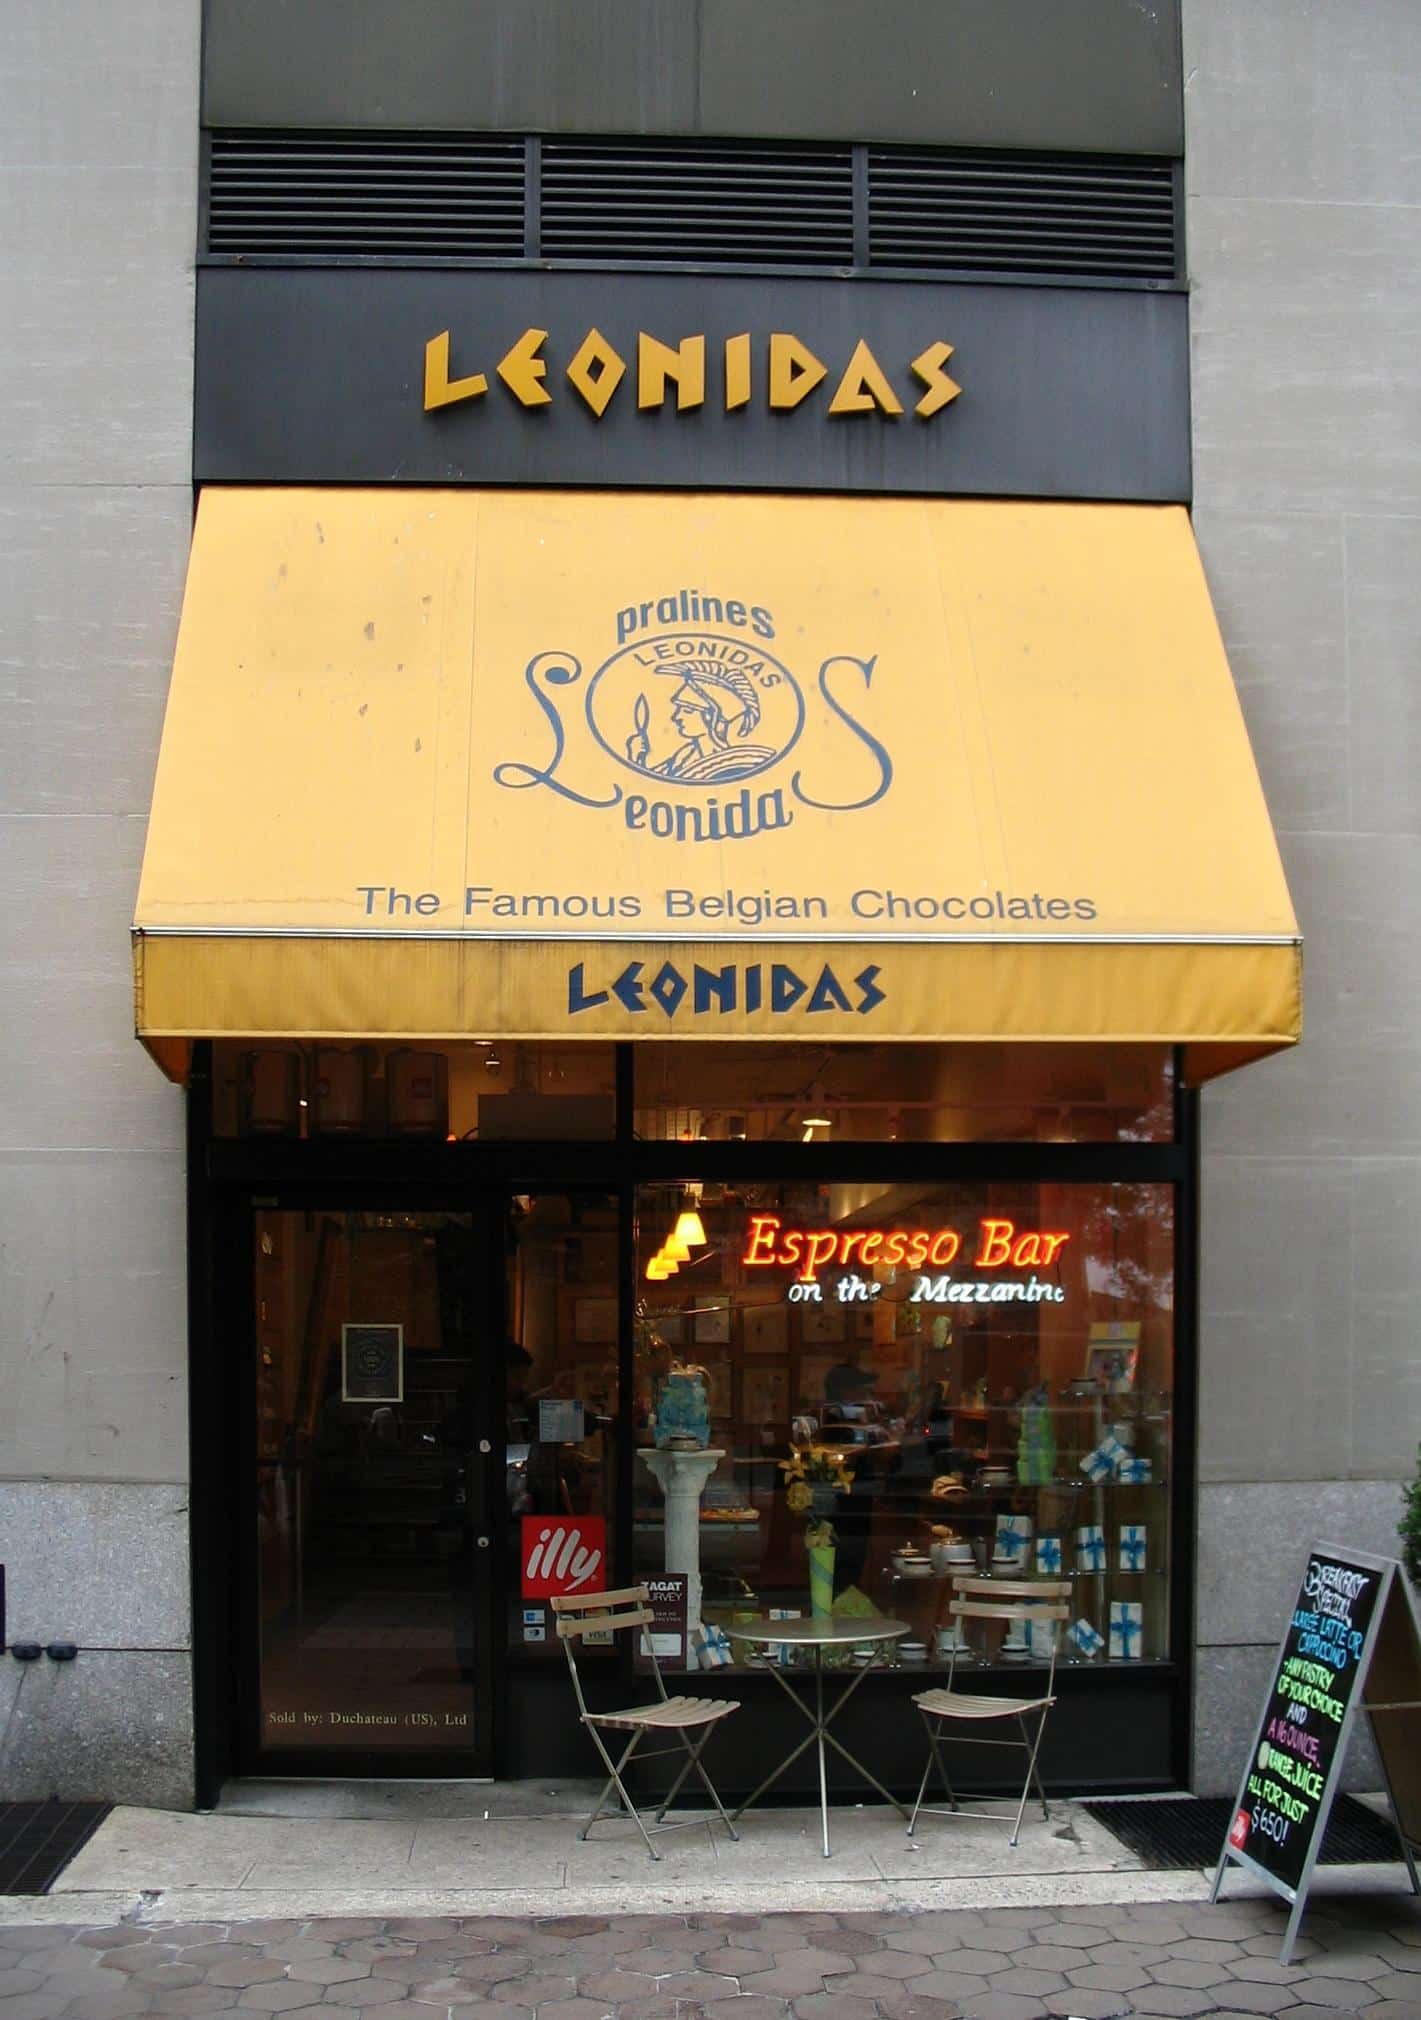 leonidas shop downtown manhattan